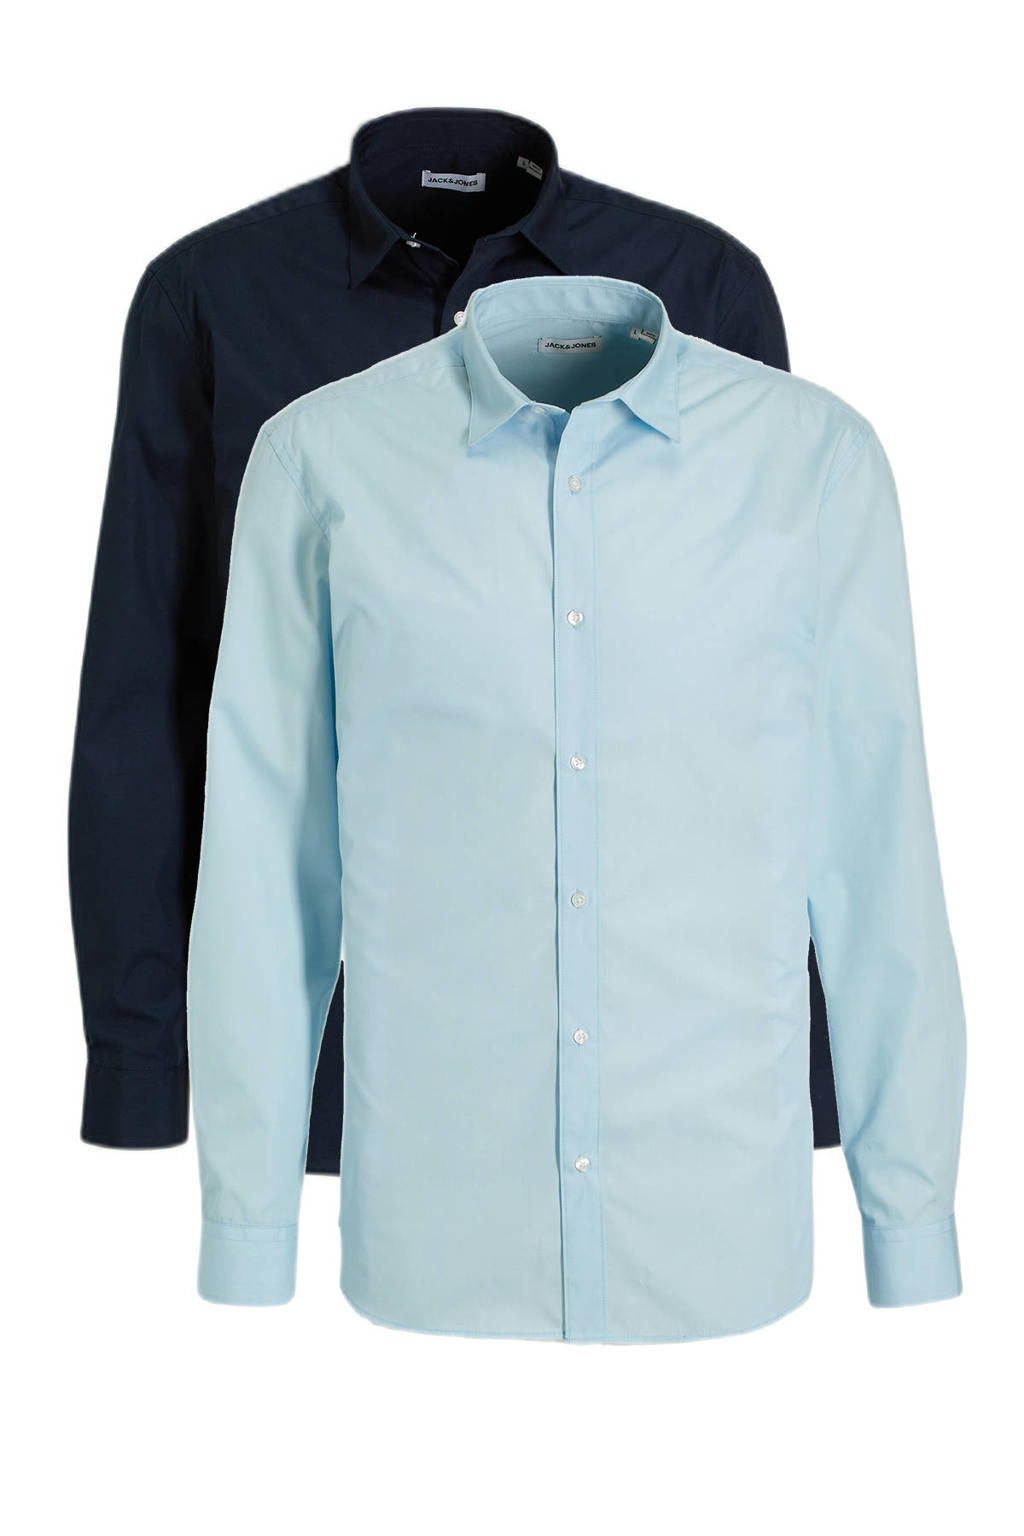 Set van 2 blauwe heren JACK & JONES overhemd van polyester met lange mouwen, klassieke kraag en knoopsluiting